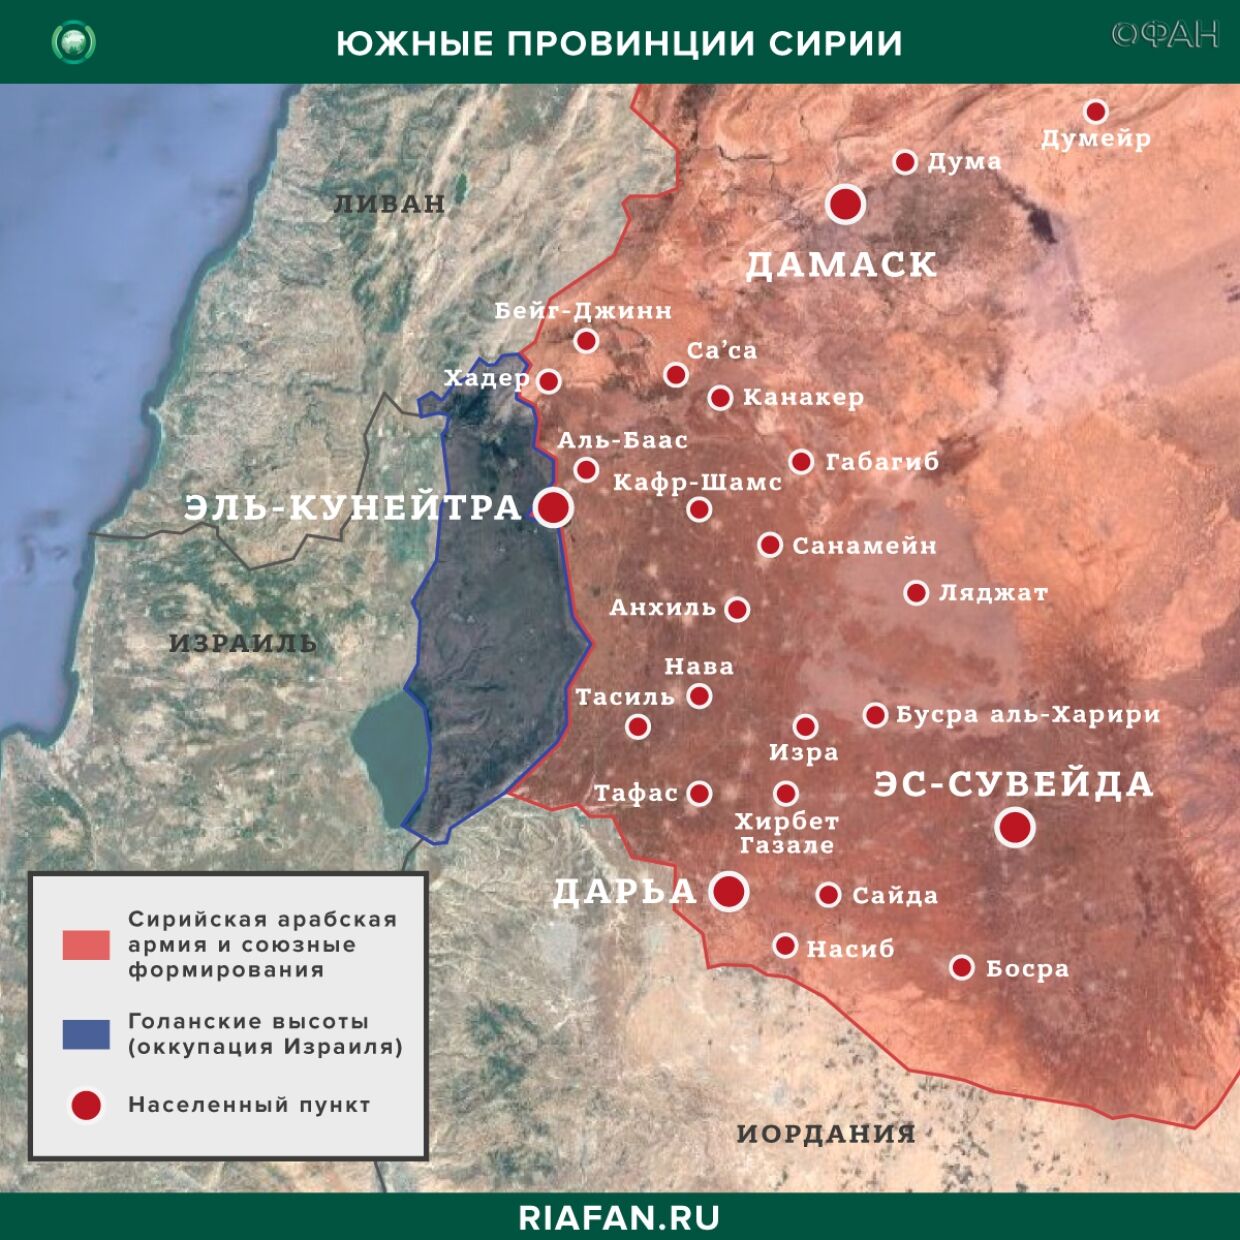 叙利亚新闻 21 四月 12.30: 以色列袭击巴尔米拉附近, 阿夫林亲土耳其武装分子之间发生自相残杀